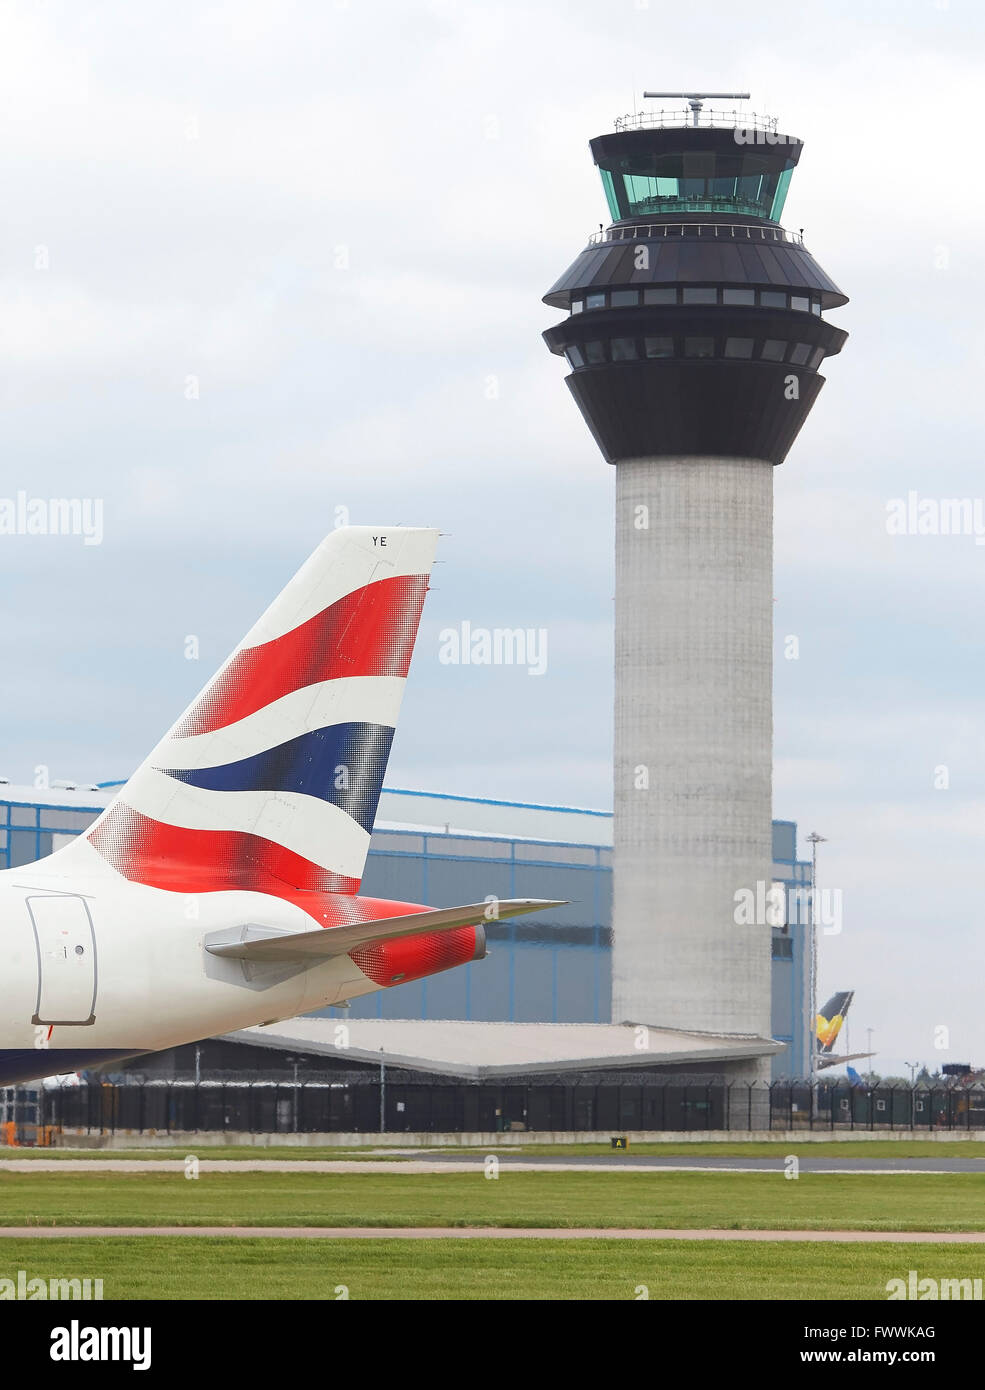 La giustapposizione di pinna di coda e la torre di controllo. Aeroporto di Manchester, Manchester, Regno Unito. Architetto: n/a, 2015. Foto Stock